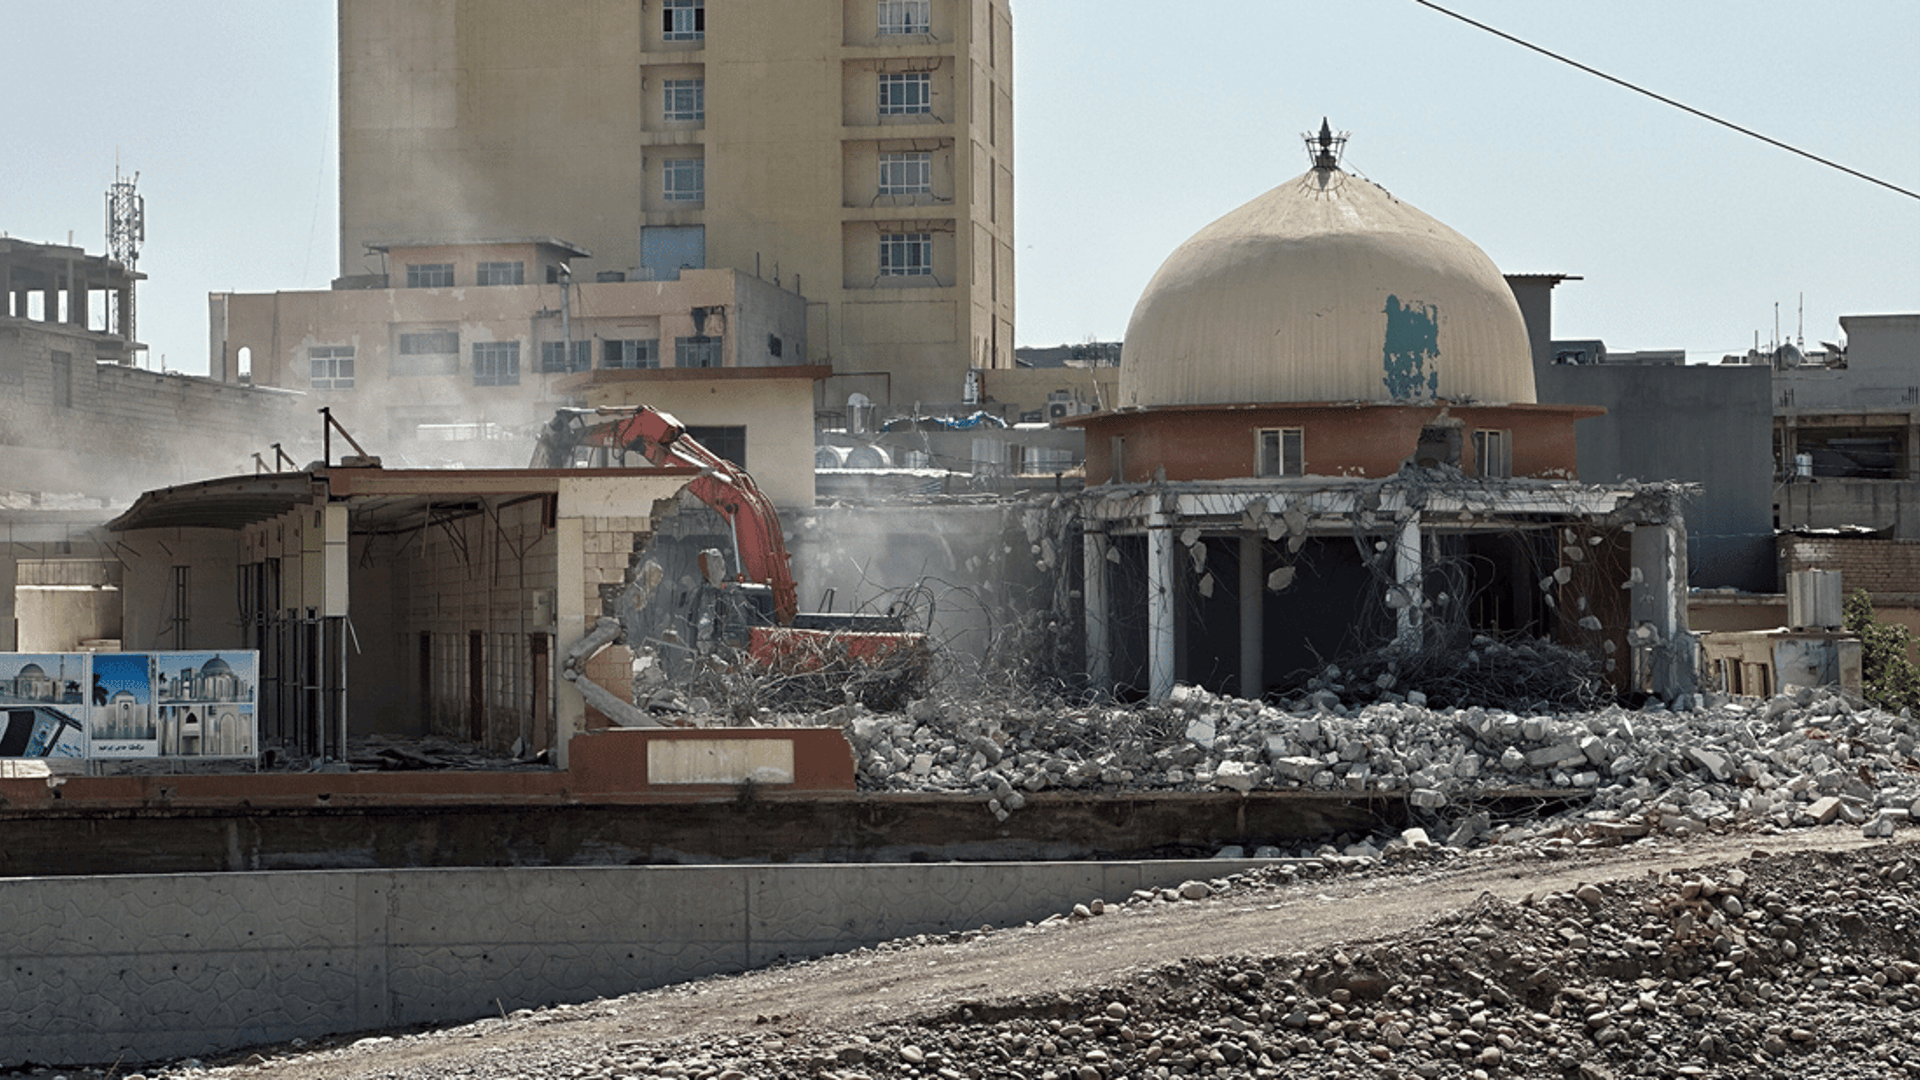 Haji Ibrahim Mosque in Zakhos market area demolished